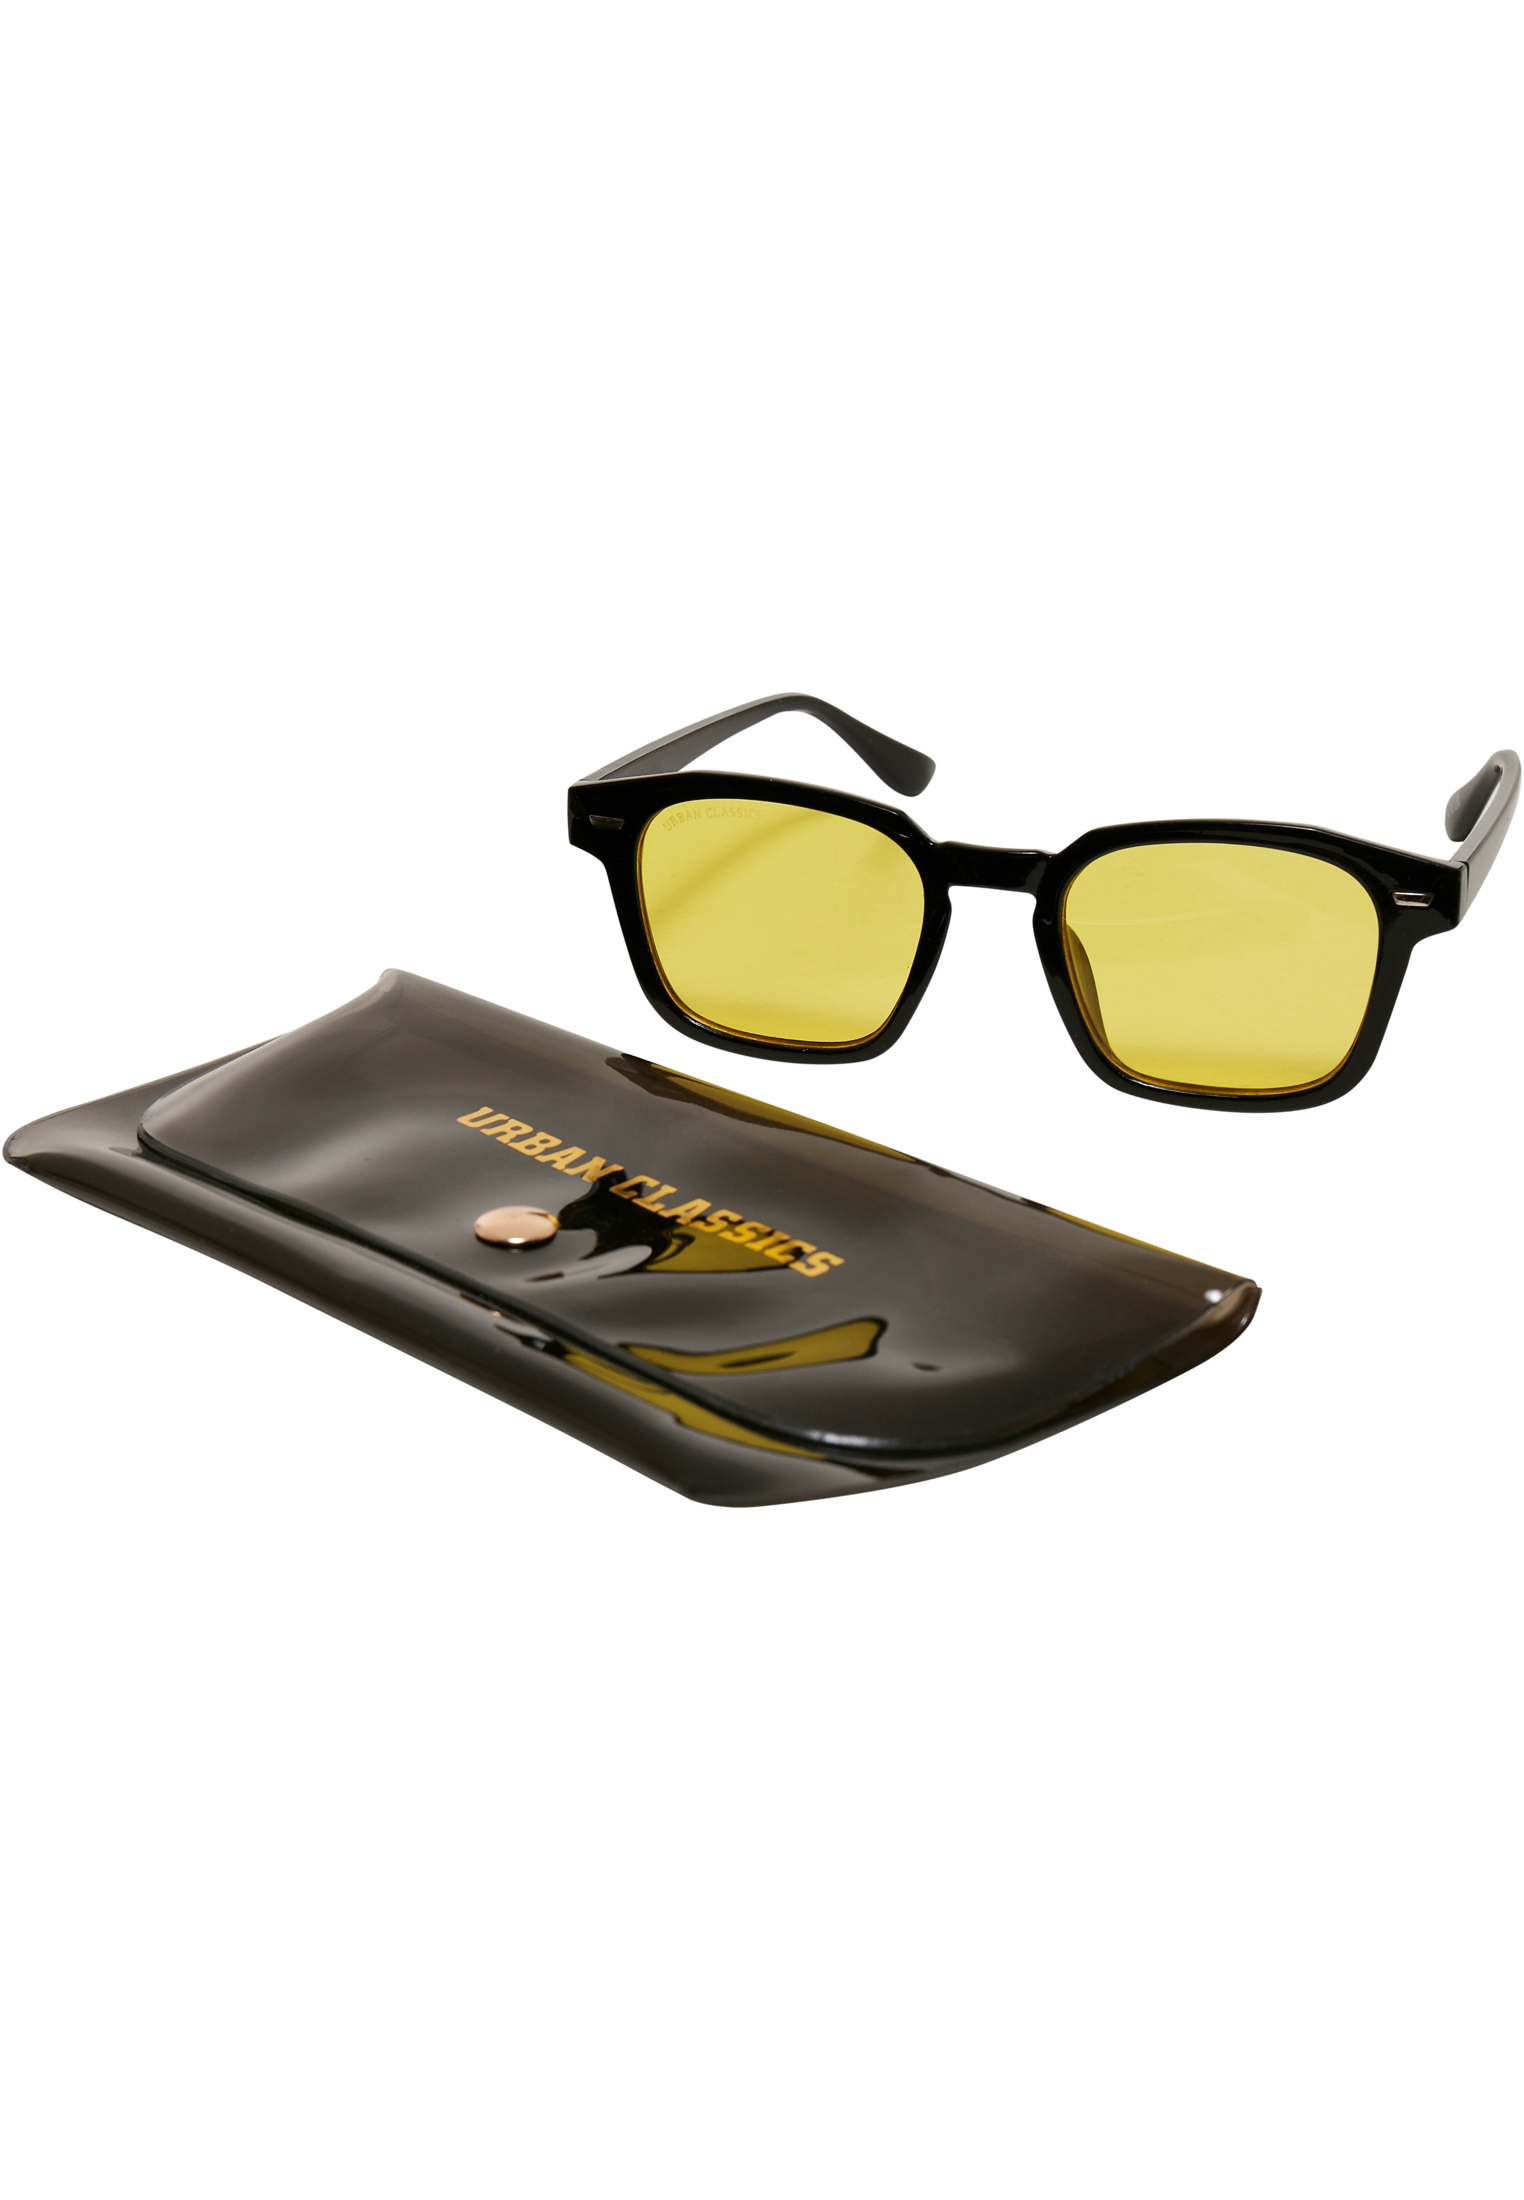 Case-TB5210 Sunglasses With Maui